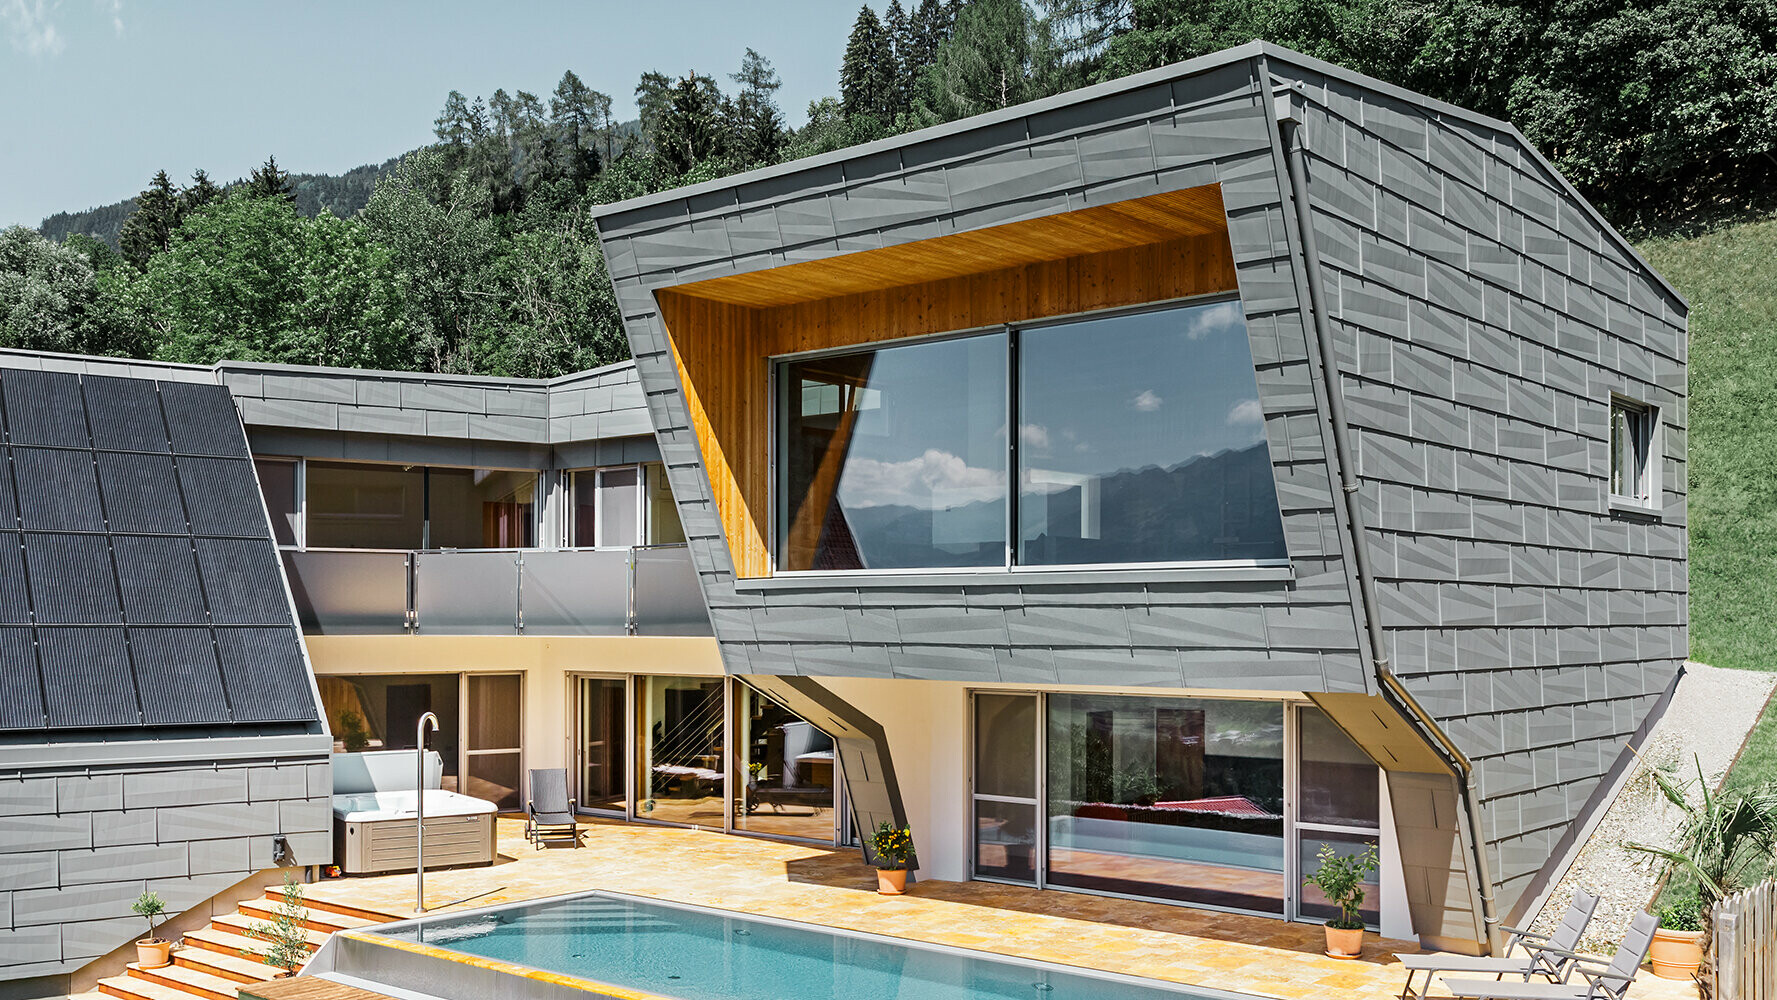 Nowoczesny dom jednorodzinny z panelem dachowym i elewacyjnym PREFA FX.12 w kolorze P.10 jasnoszarym